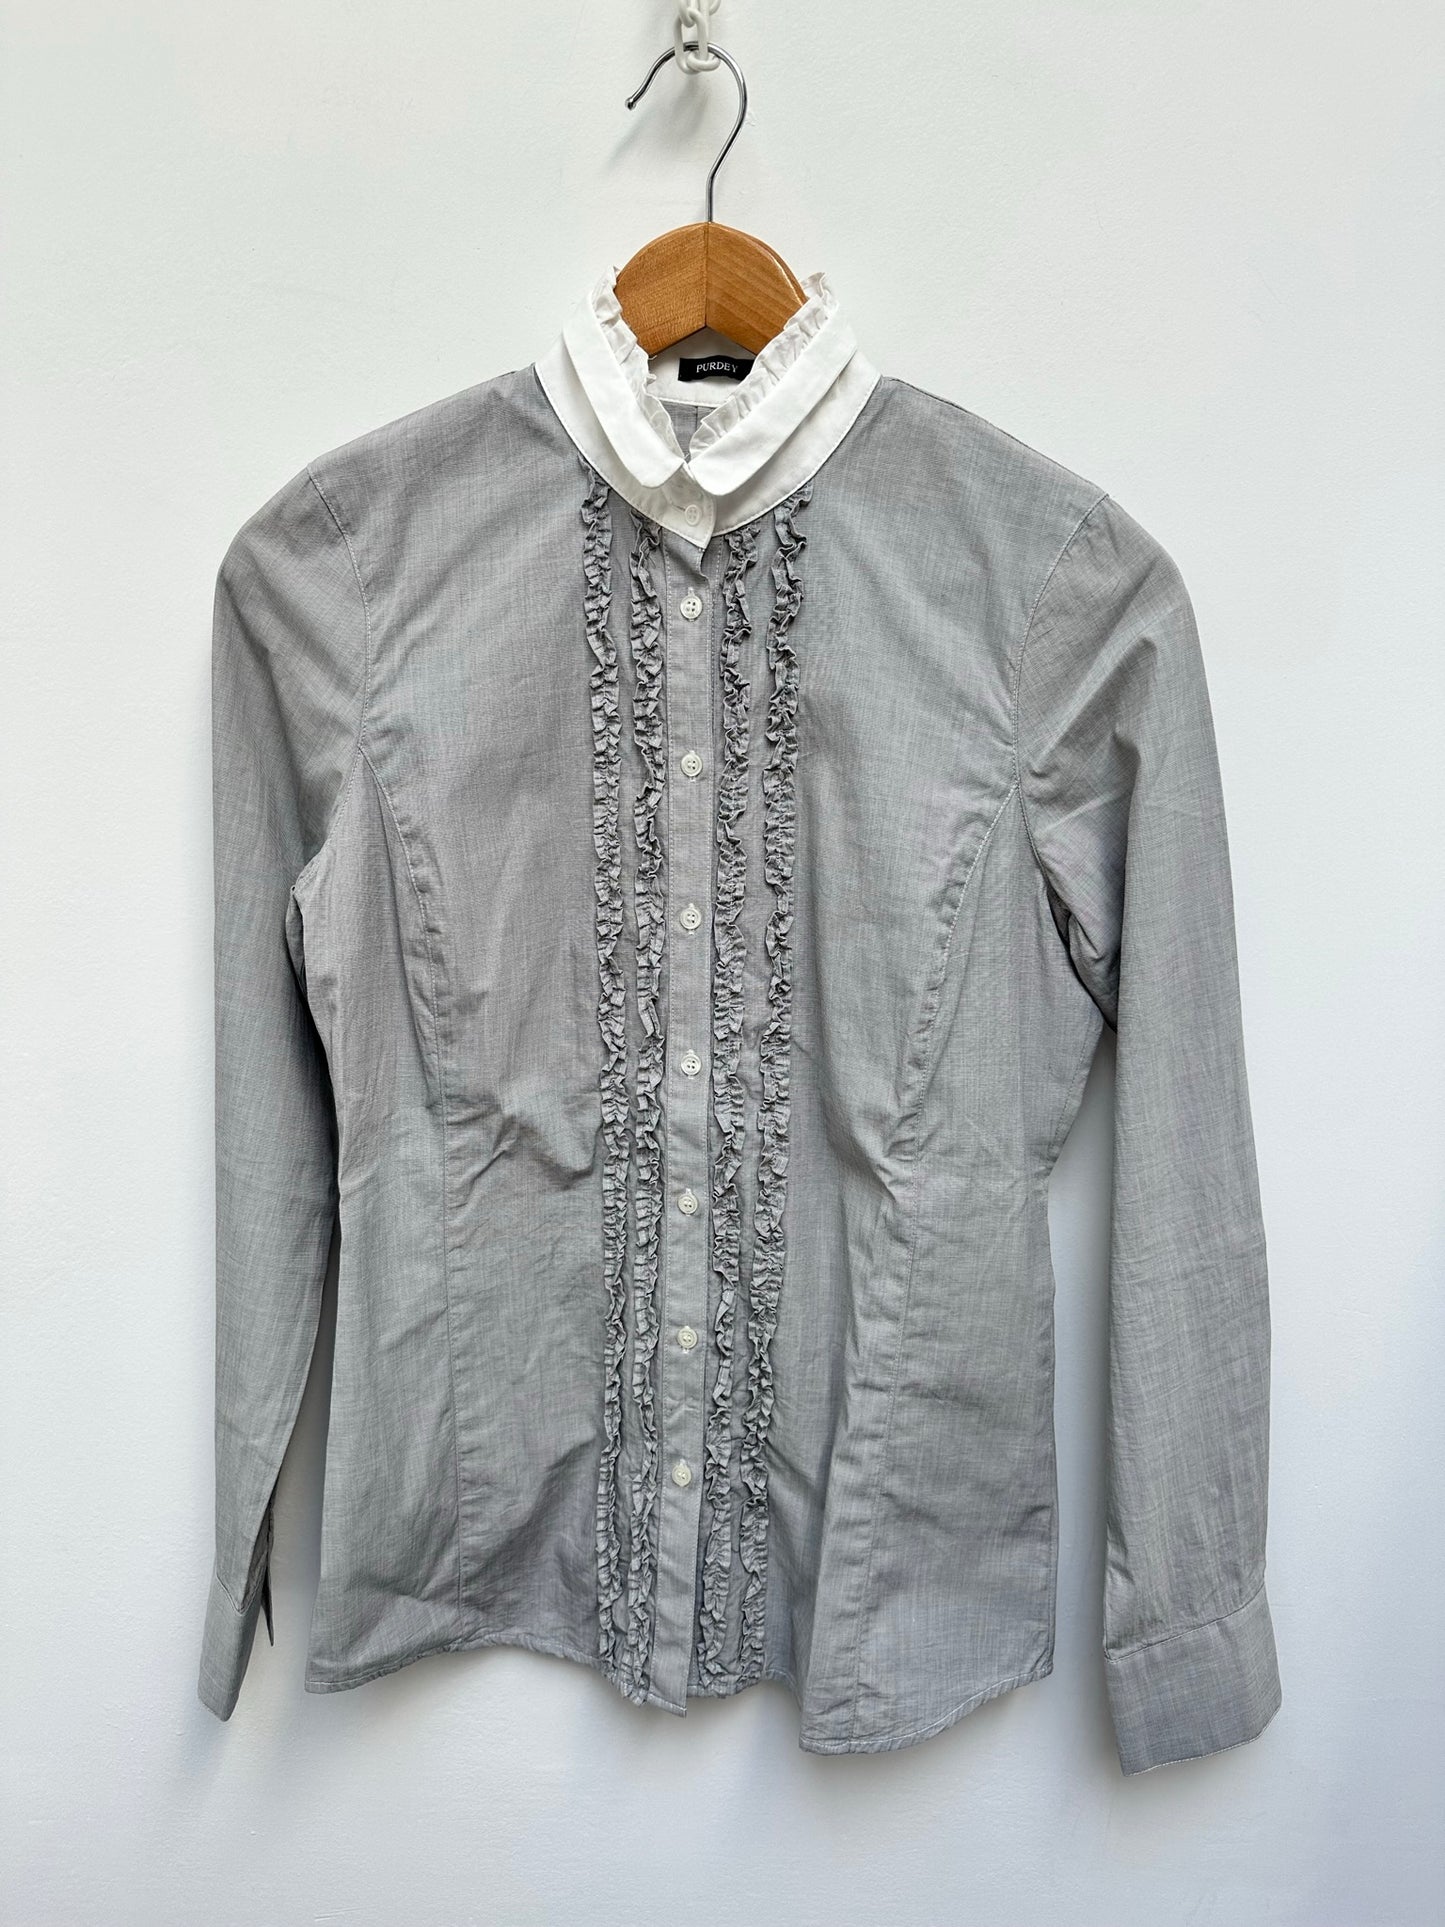 Purdey grijze blouse met witte kraag maat 36